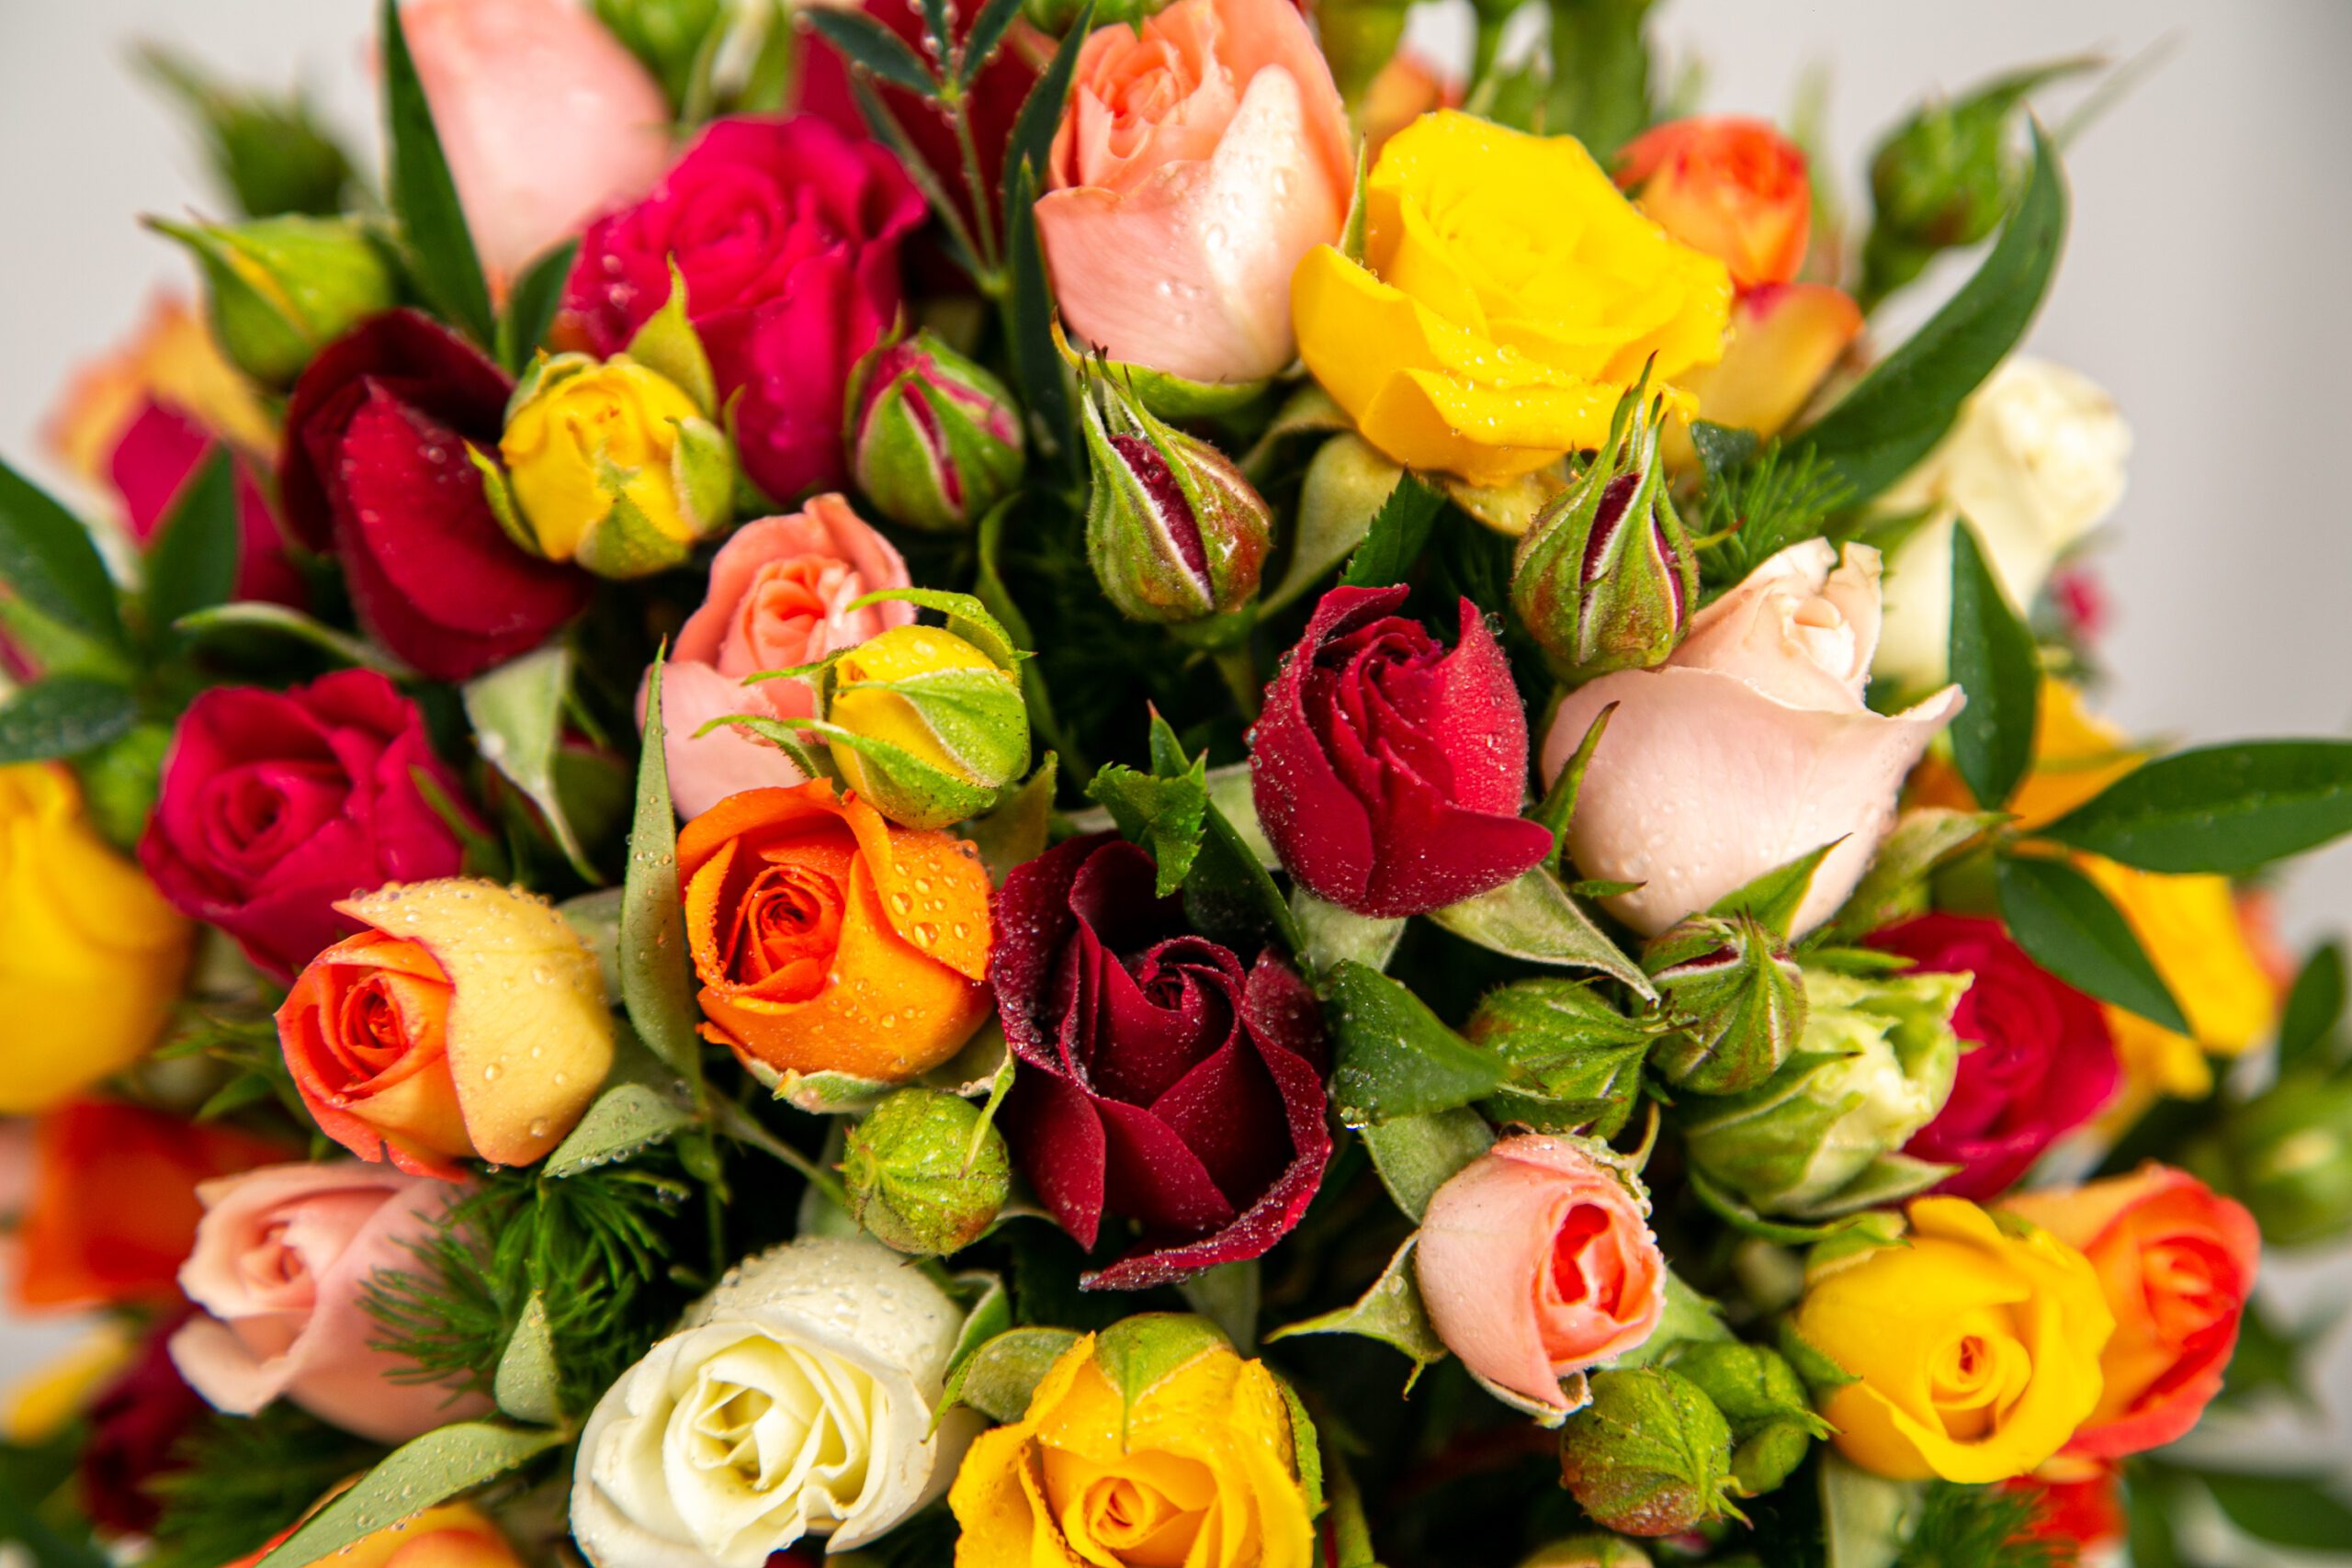 Conjunto de rosas nas cores vermelha, amarelo, laranja, rosa claro e branco.